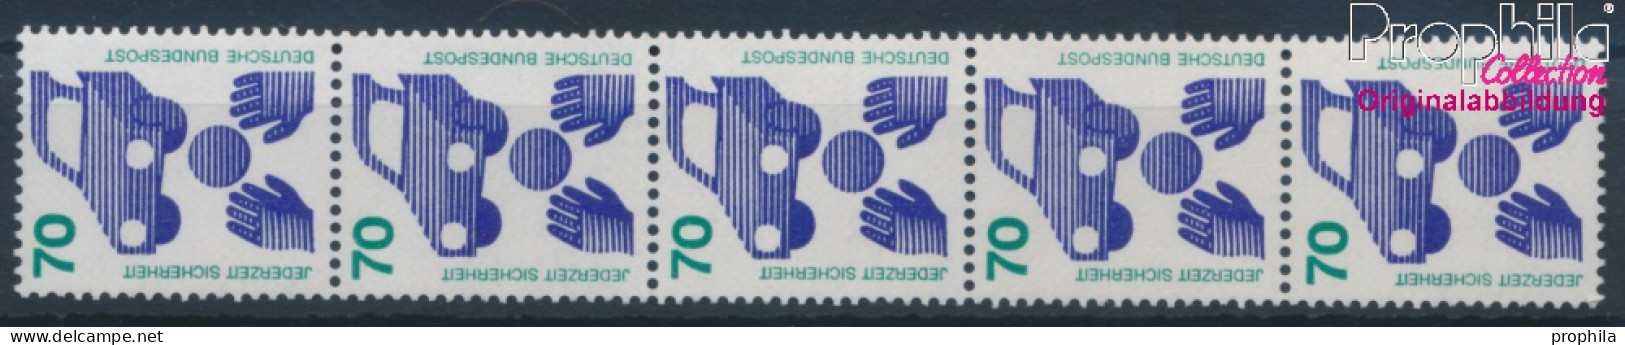 BRD 773Ra Fünferstreifen (kompl.Ausg.) Postfrisch 1973 Unfallverhütung (10343236 - Neufs